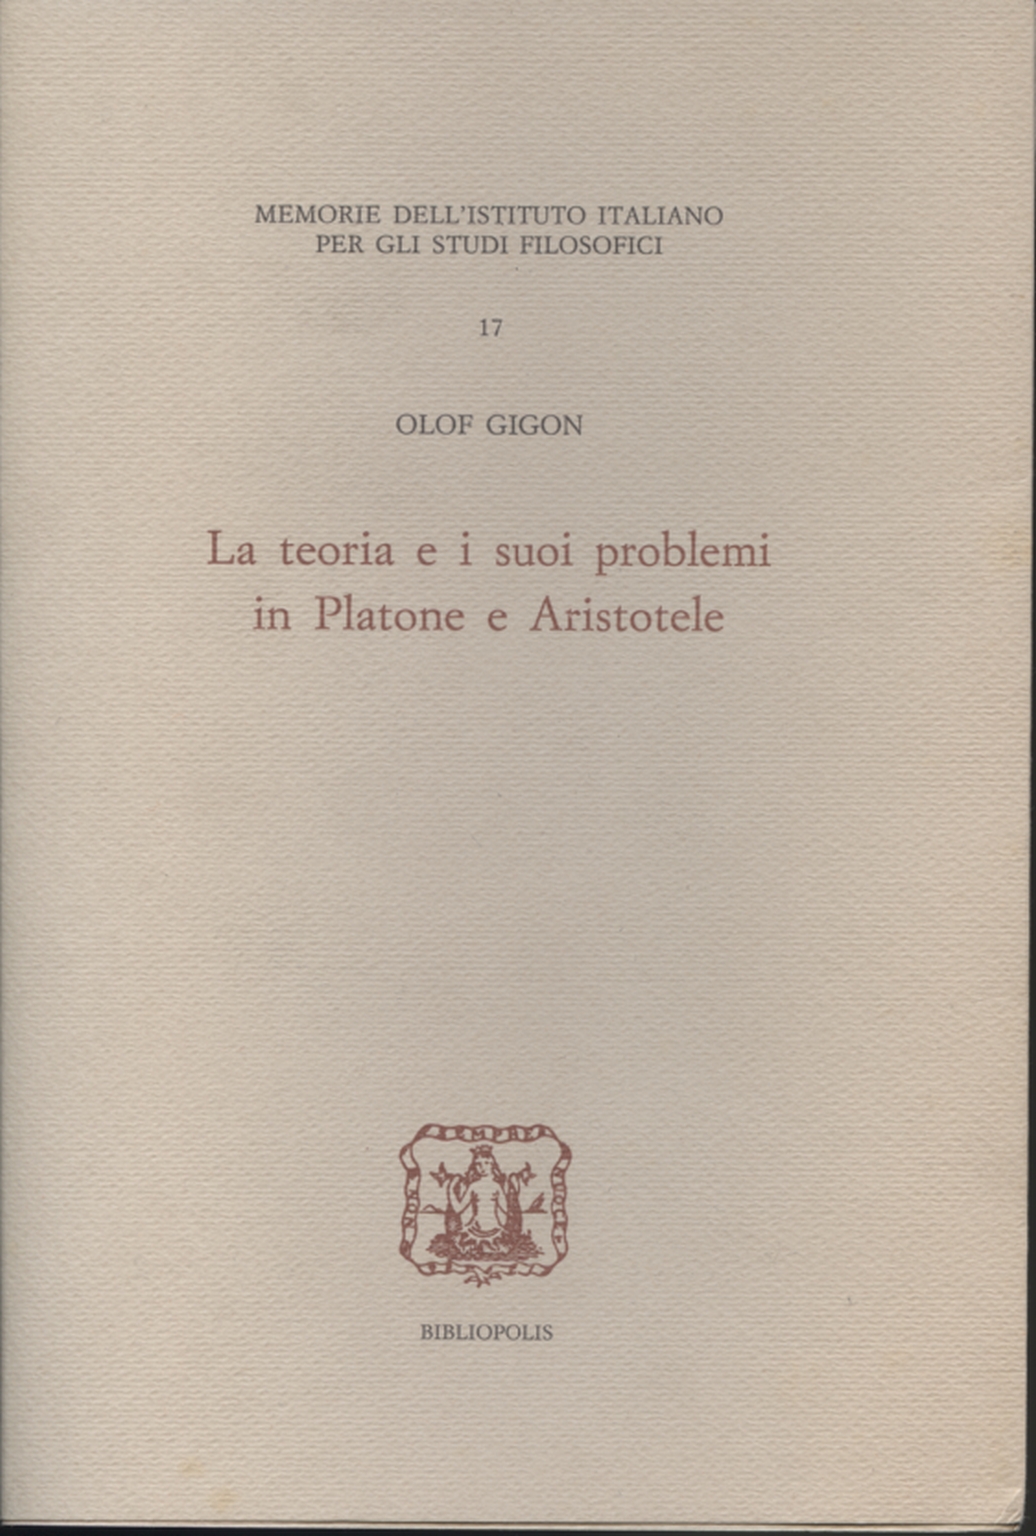 La teoria e i suoi problemi in Platone e Aristotel, Olof Gigon